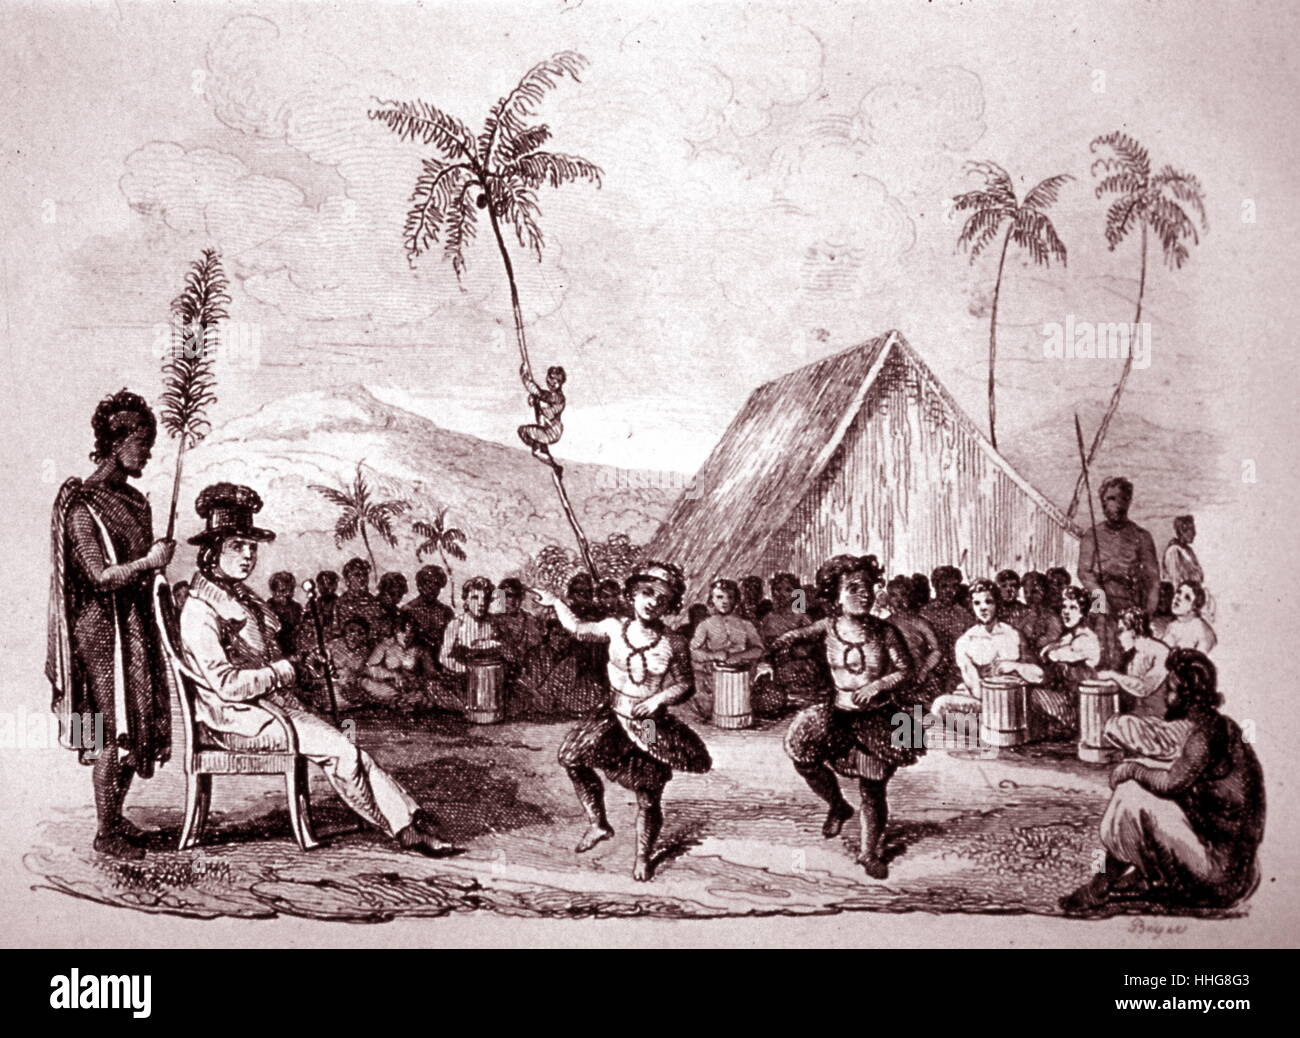 Bailarines nativo hawaiano en ceremonial atuendo de plumas; por John Webber (1751 - 1793); el artista inglés que acompañaban al Capitán Cook en su tercer Pacífico expedición al Pacífico (1776-80), a bordo del HMS Resolution. Foto de stock